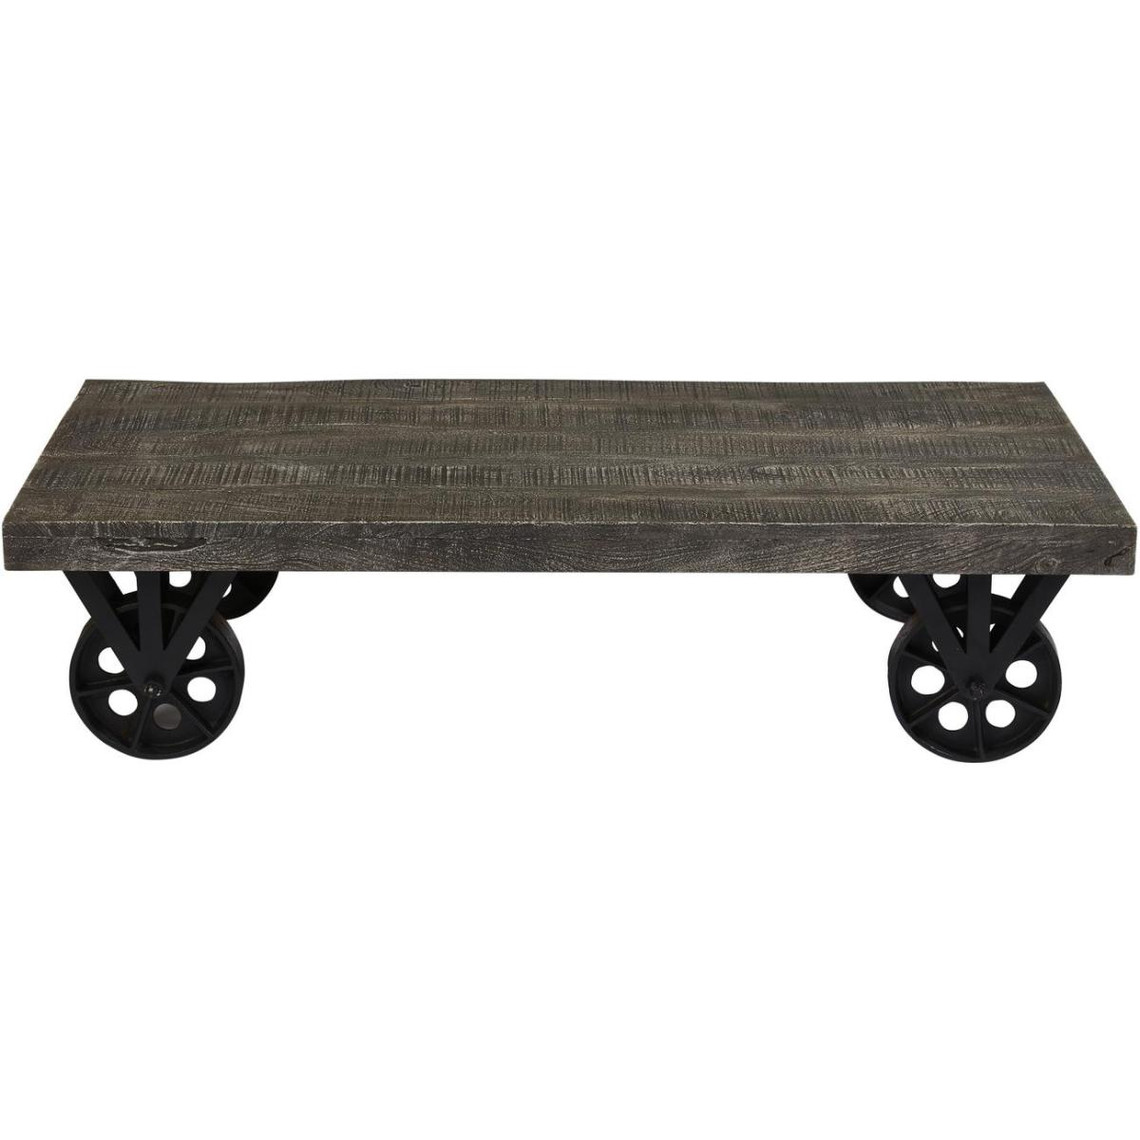 Table Basse plateaux en bois et Pieds Métal avec roulettes